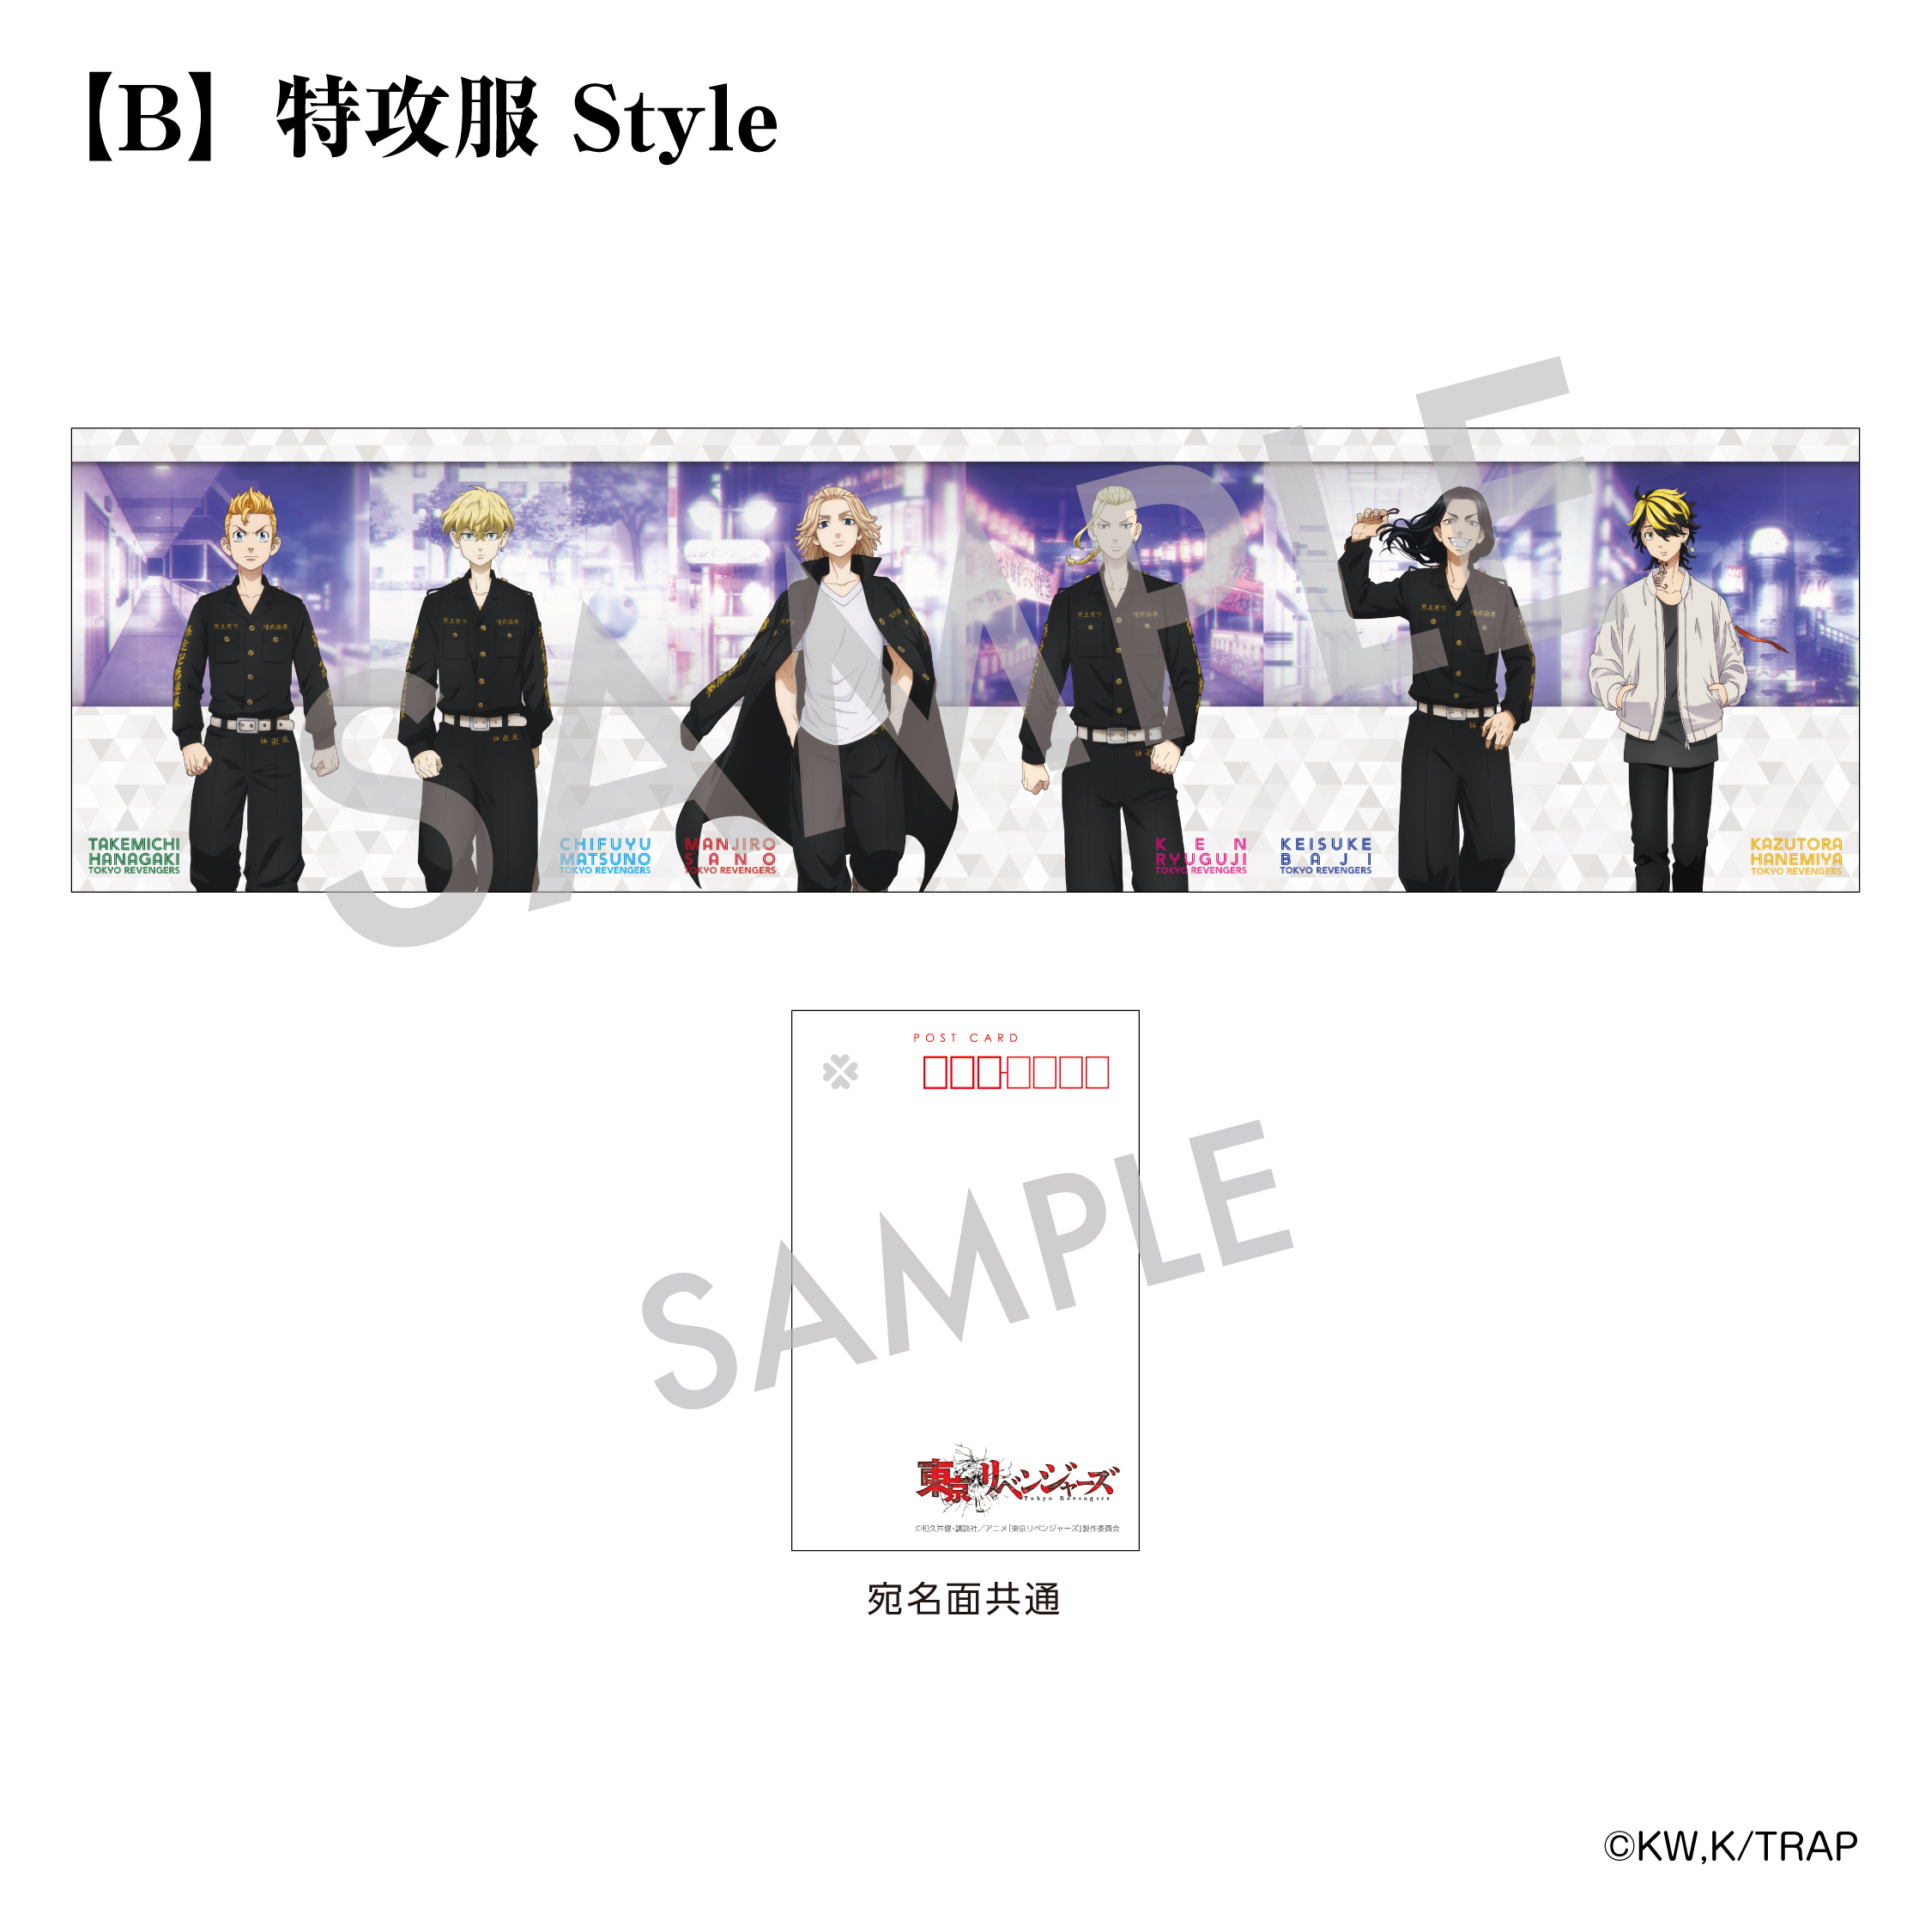 【東京リベンジャーズ】６連ジャバラポストカード B. 特攻服 Style